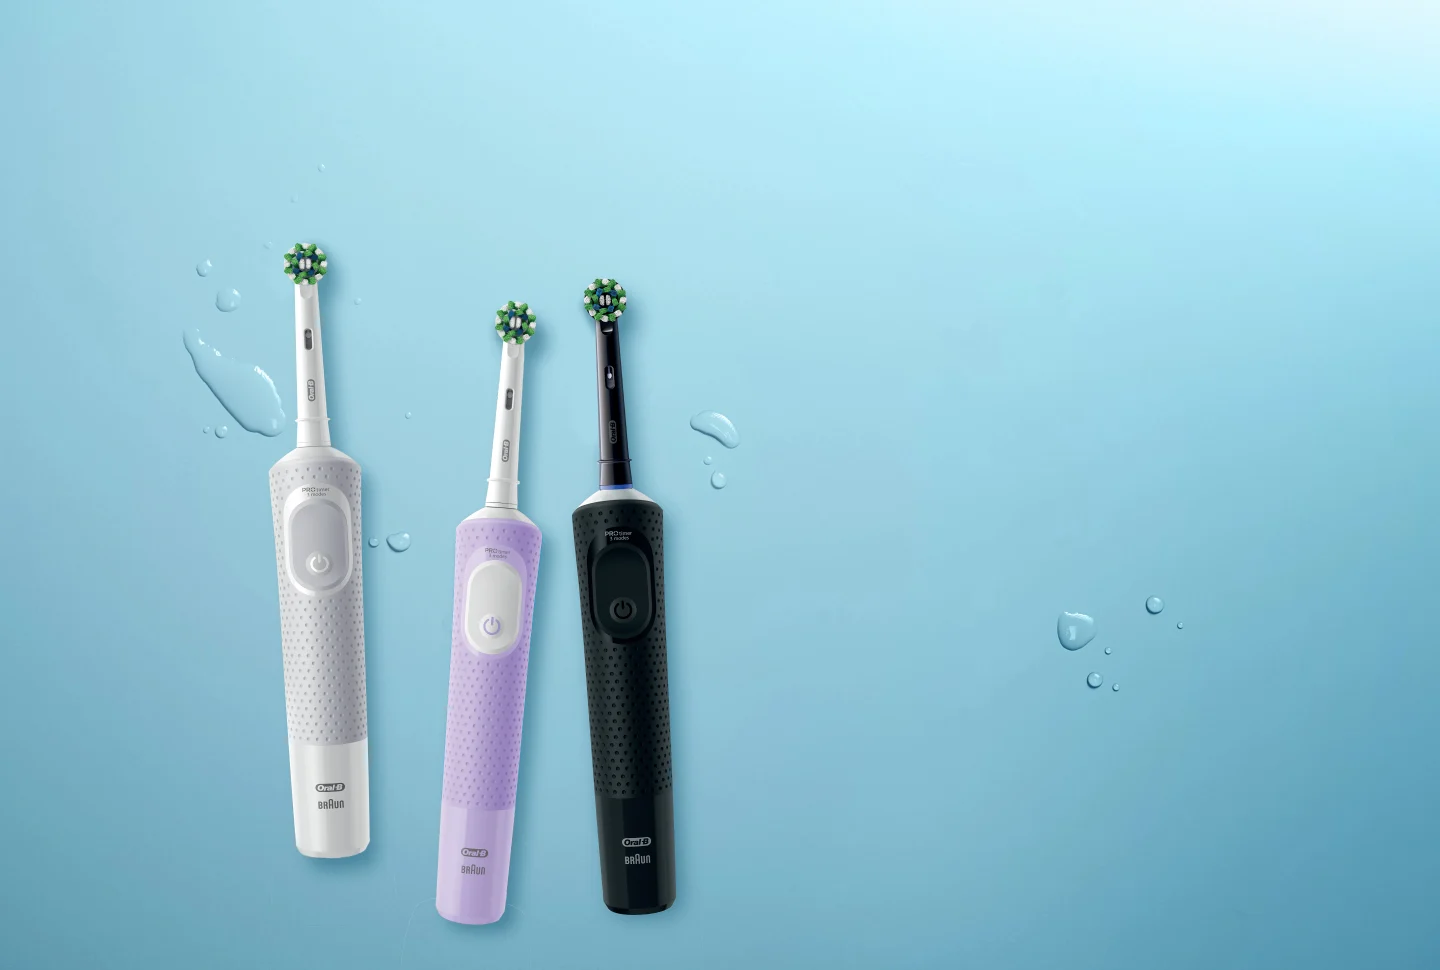 Oral-B Vitality cepillo de dientes eléctrico colección